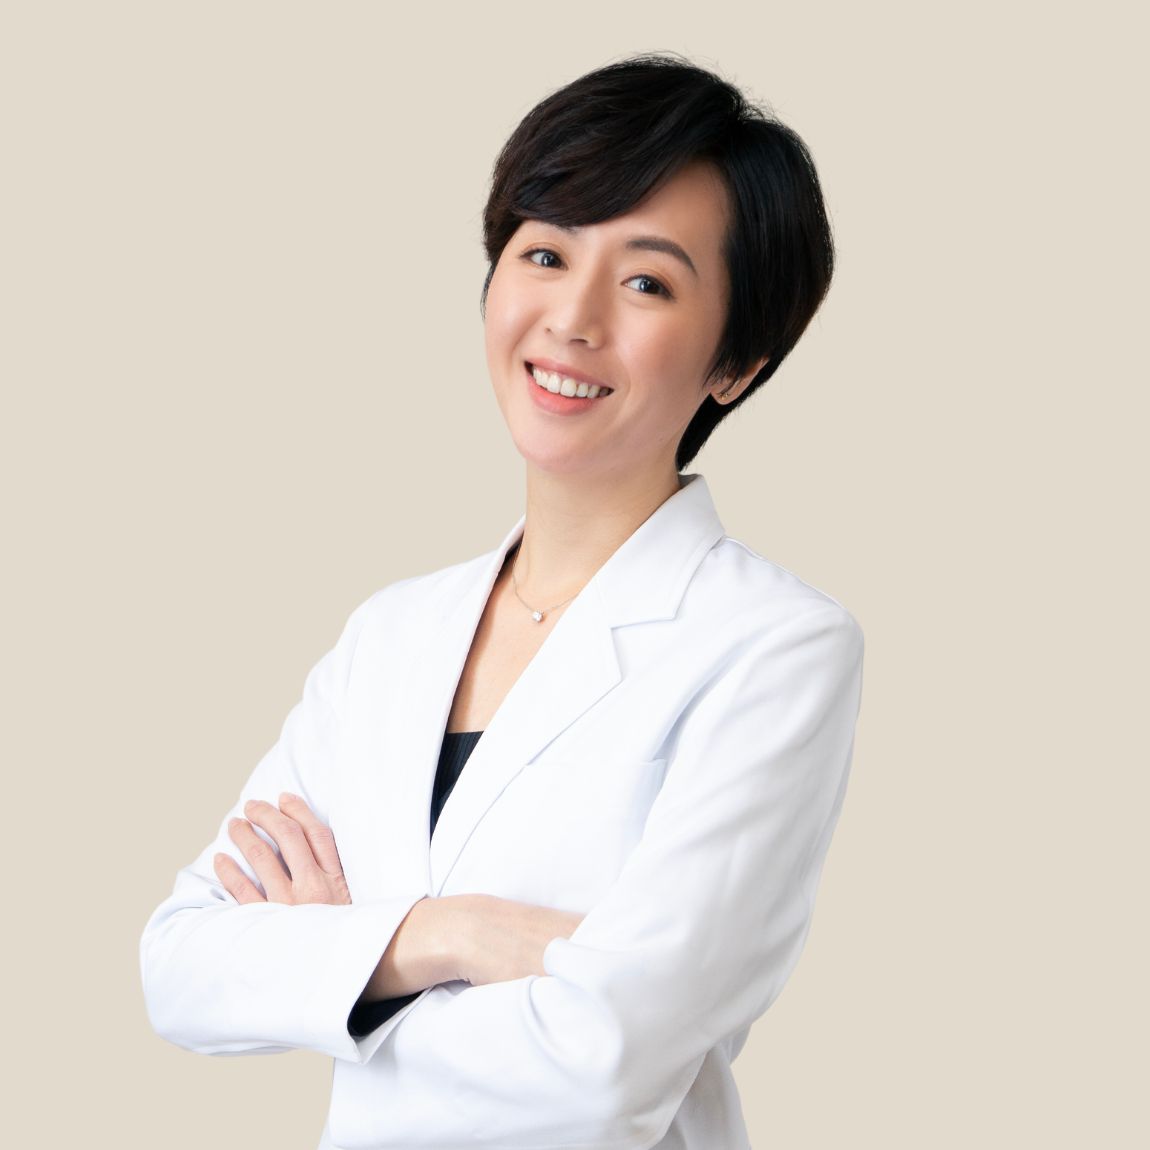 黃馨慧 Dr. ファン Hsin-Hui Huang, MD, 醫師.